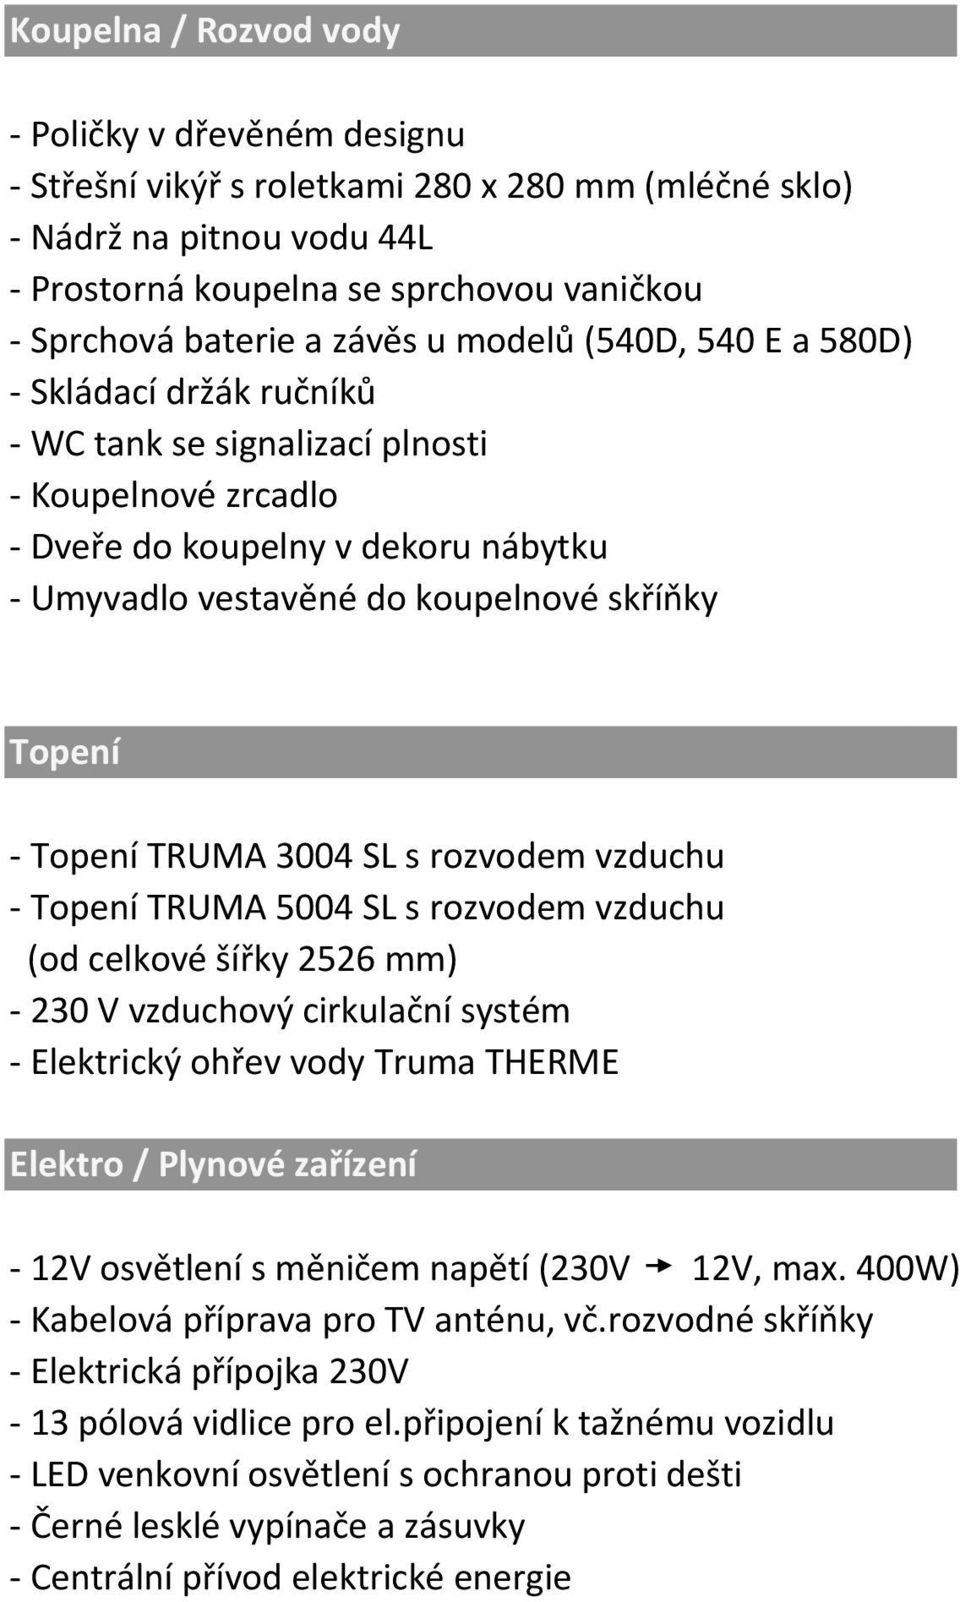 Topení - Topení TRUMA 3004 SL s rozvodem vzduchu - Topení TRUMA 5004 SL s rozvodem vzduchu (od celkové šířky 2526 mm) - 230 V vzduchový cirkulační systém - Elektrický ohřev vody Truma THERME Elektro